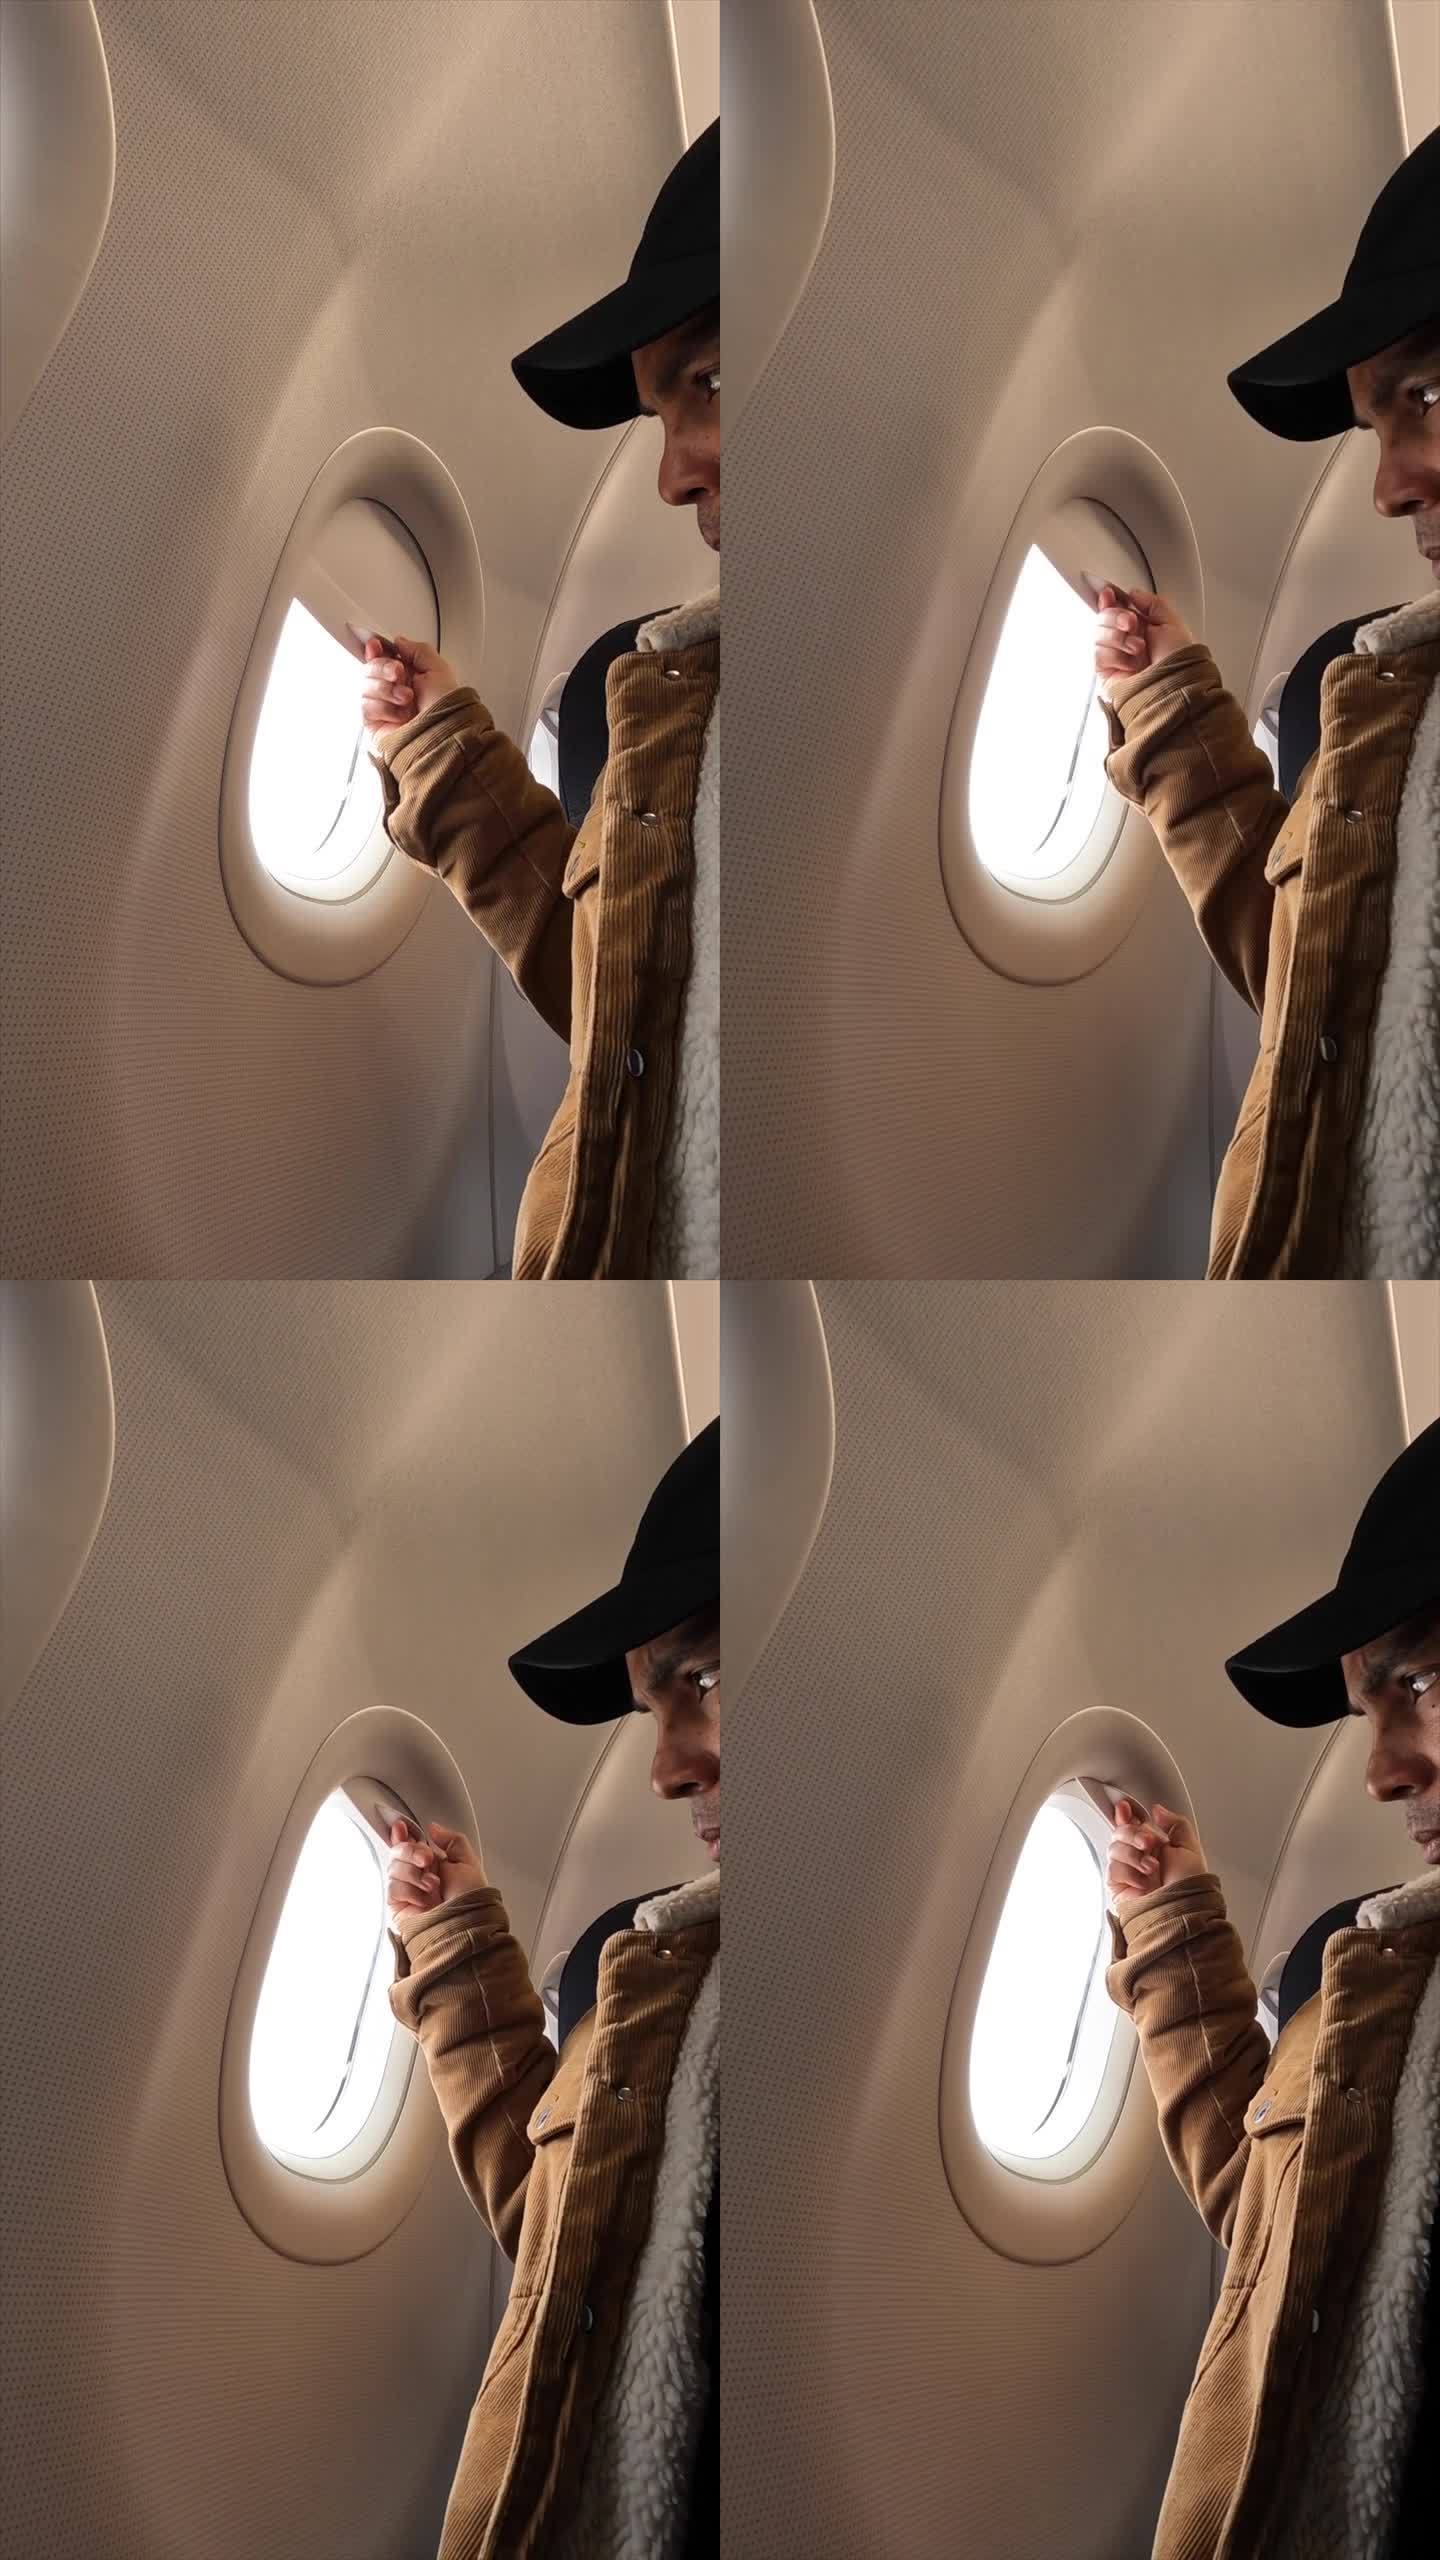 乘客在飞行途中用手打开飞机窗户